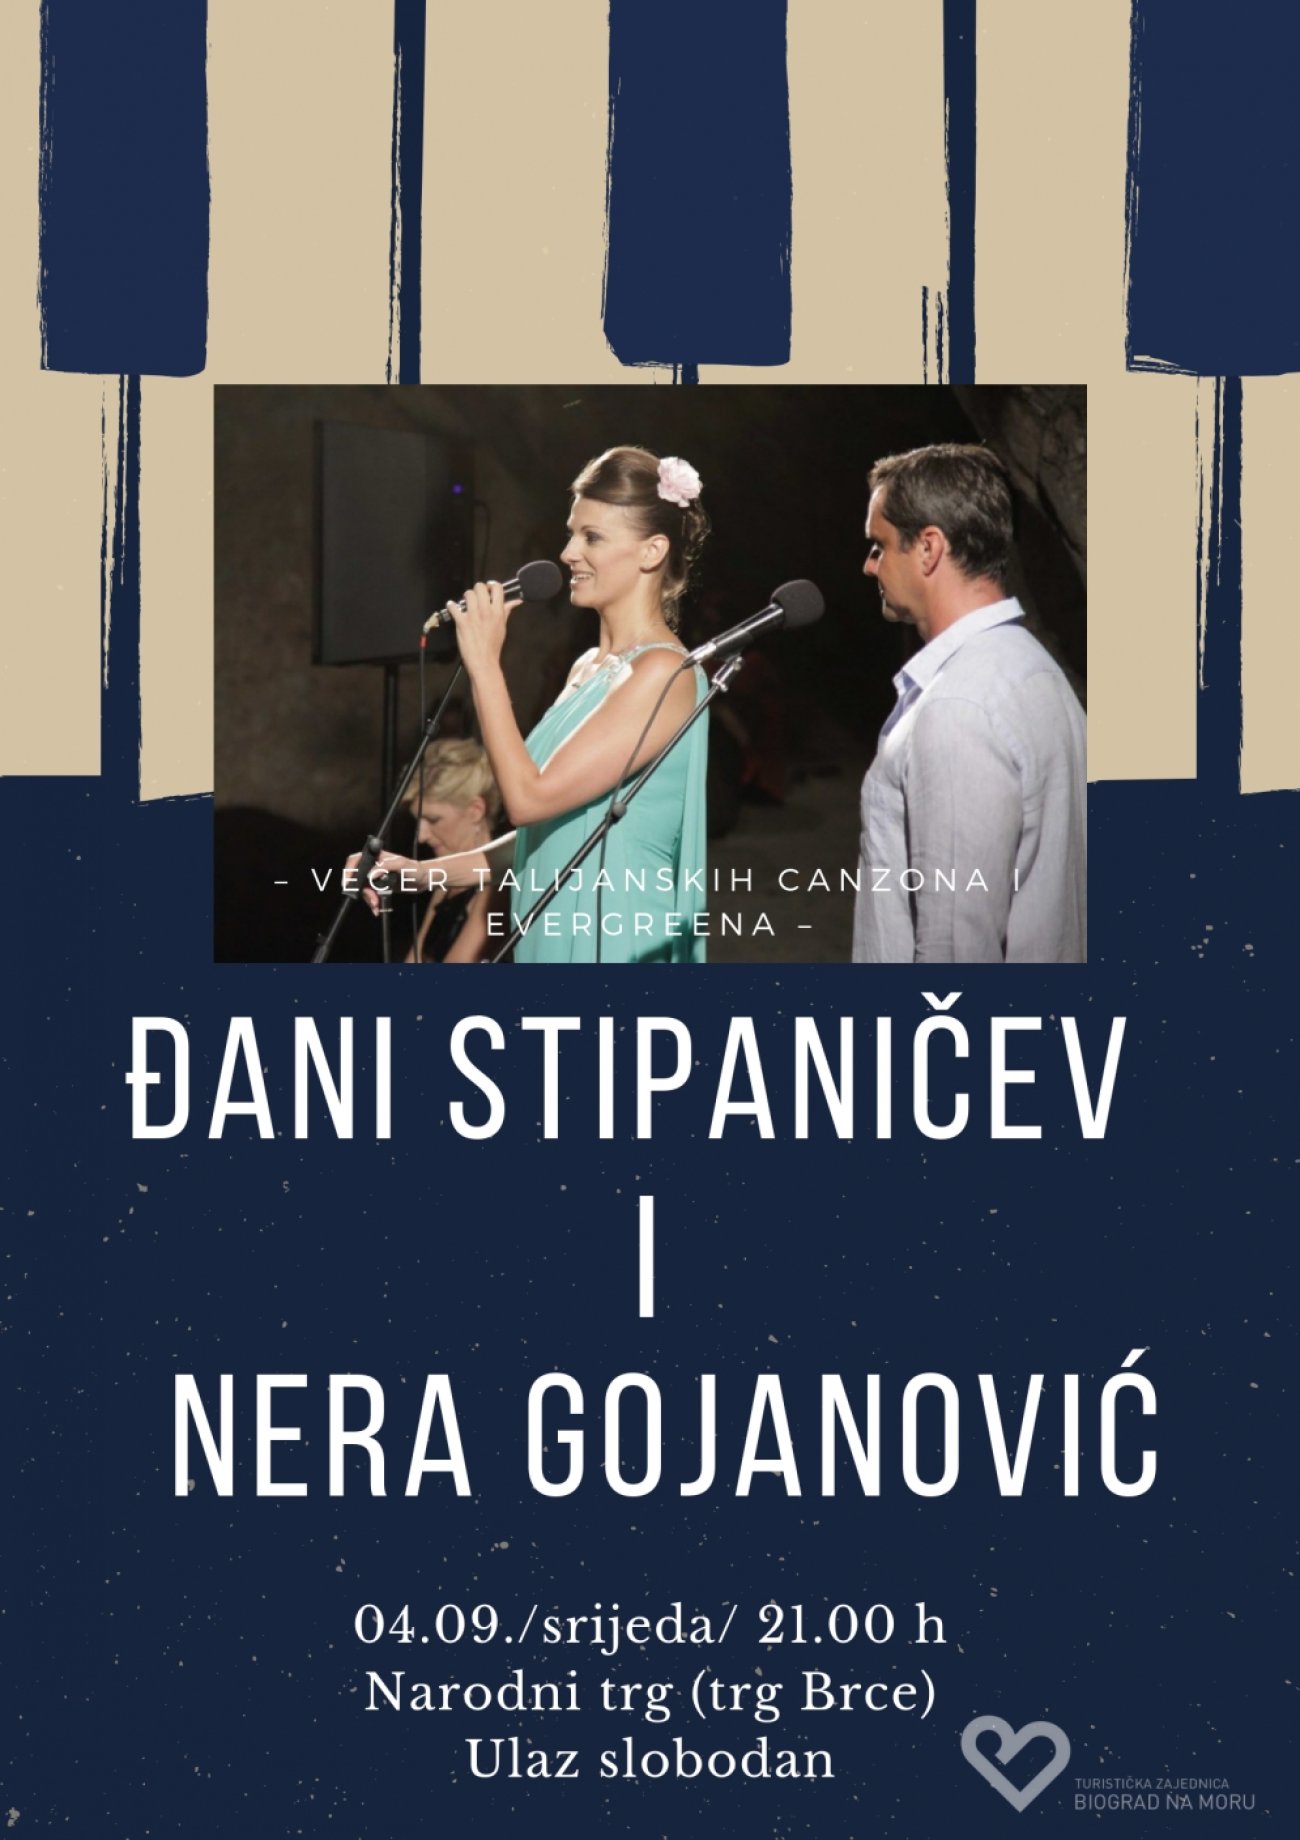 Na Narodnom trgu (trg Brce) 4.9. od 21 sat nastupaju vrhunski vokalisti i miljenici publike - Đani Stipaničev i Nera Gojanović